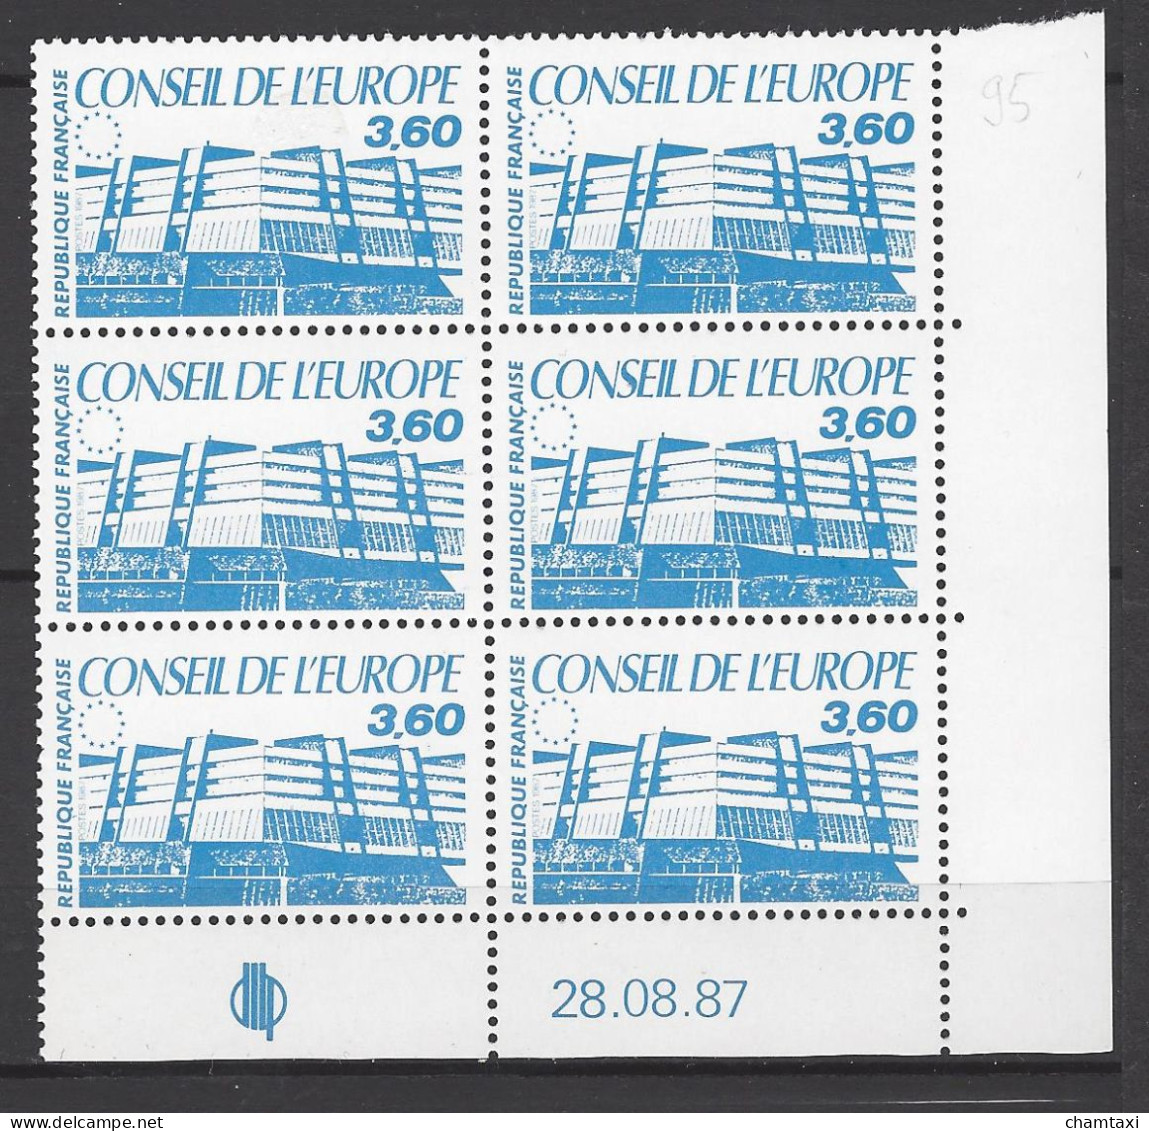 CD 97 FRANCE 1987 TIMBRE SERVICE CONSEIL DE L EUROPE BATIMENT DE STRASBOURG BLOC 6 TIMBRES COIN DATE 97  : 28 / 08 / 87 - Dienstmarken